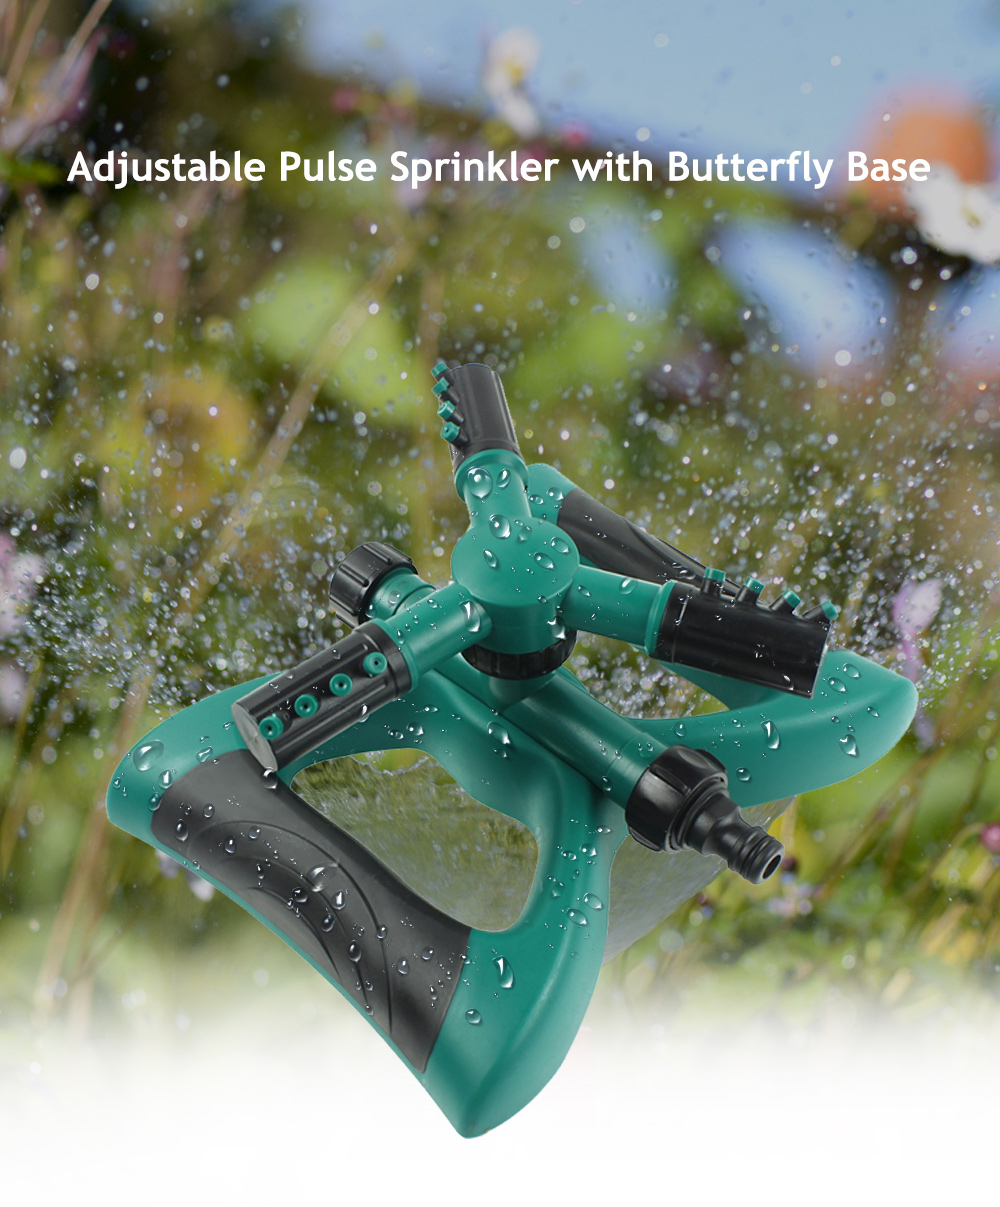 Adjustable Pulse Sprinkler with Butterfly Base